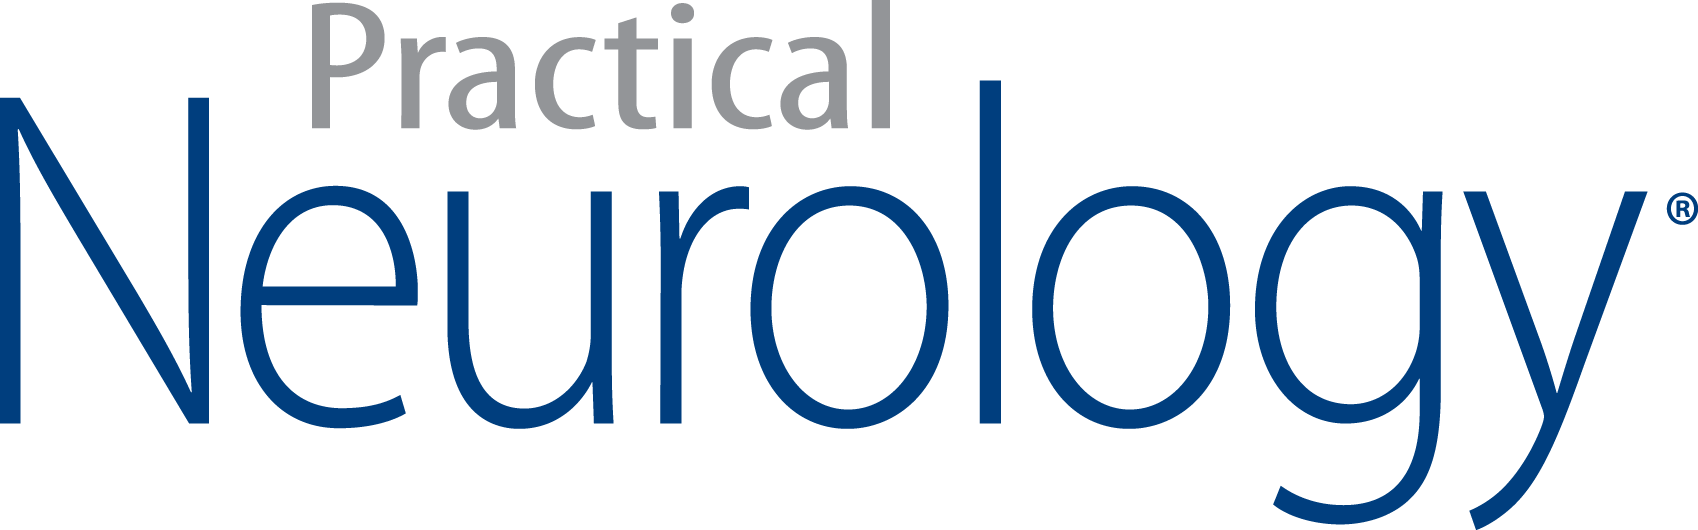 Neurology Logo - Practical Neurology